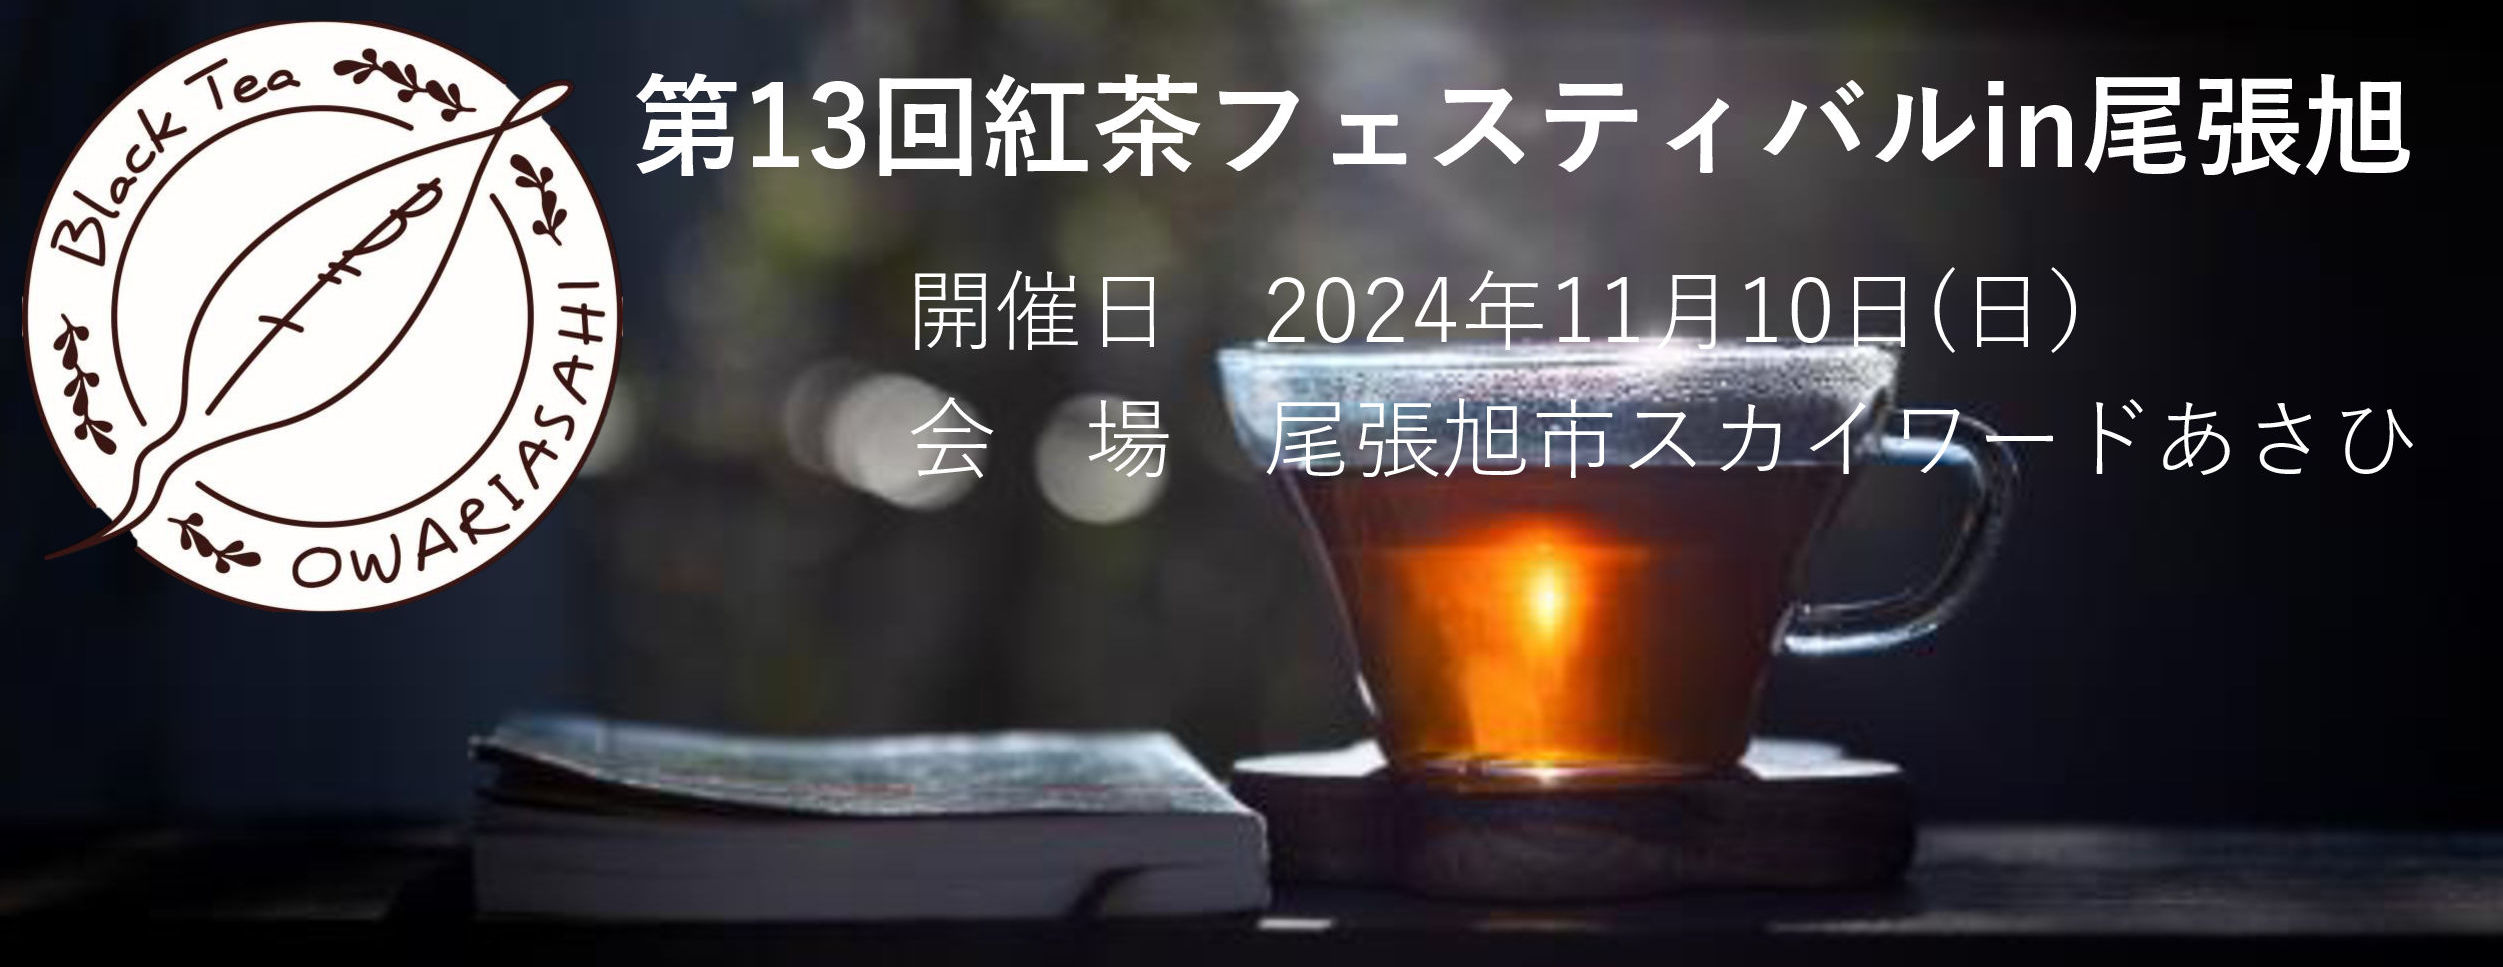 第13回紅茶フェスティバル in 尾張旭